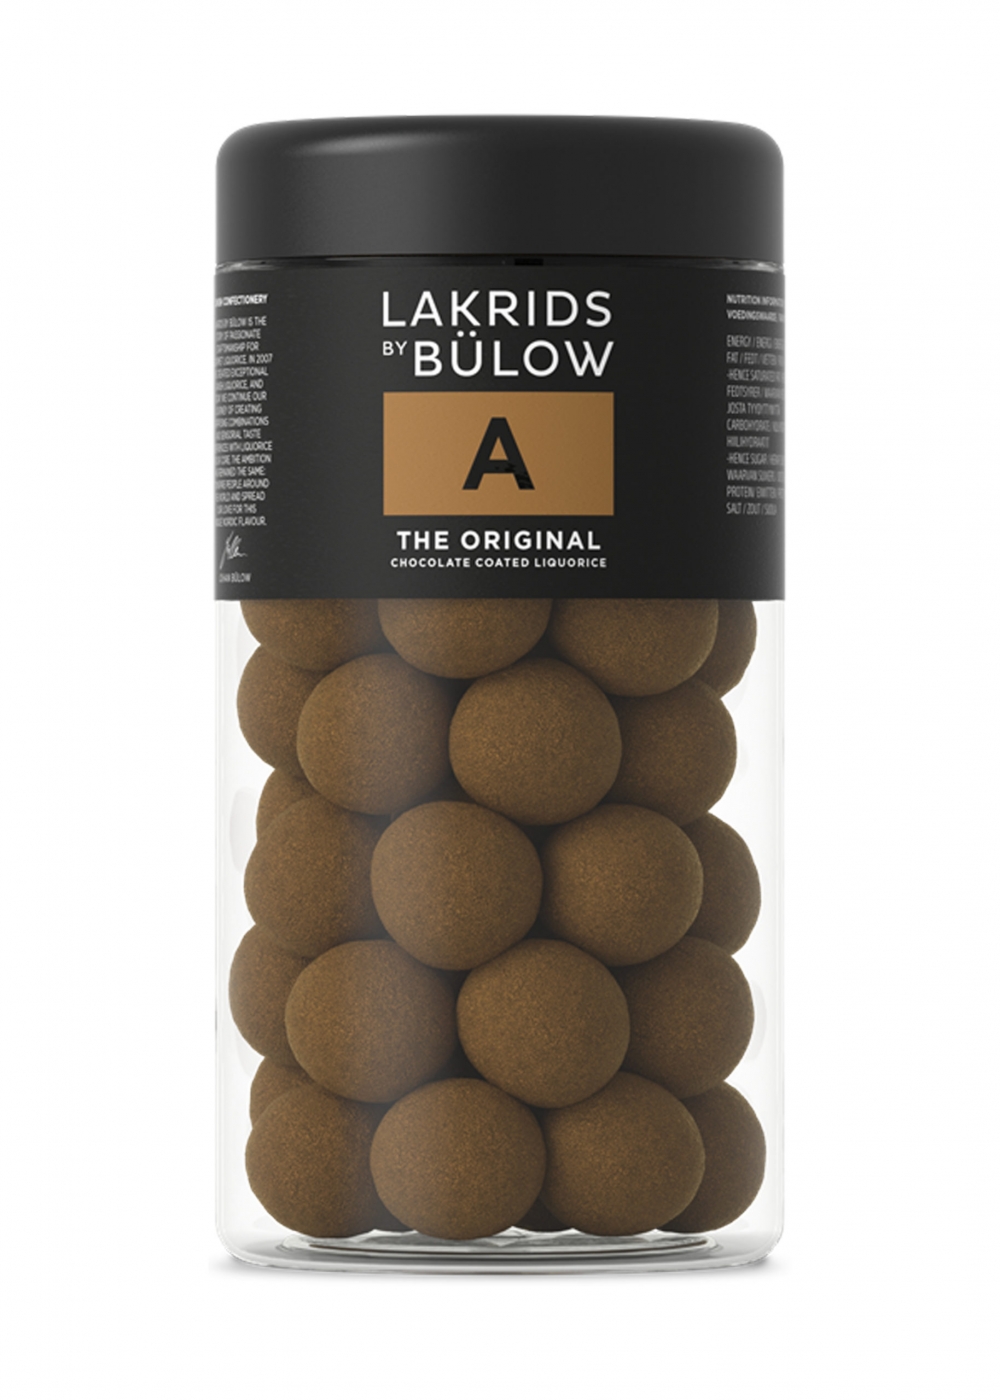 Lakrids A var det aller første produktet Johan Bülow utviklet, da han fikk ideen om å drasjere lakris i sjokolade. Til tross for skepsis til ideen så det populære produktet Lakrids A snart dagens lys. Kombinasjonen av søt lakris, nøye utvalgt premium melk